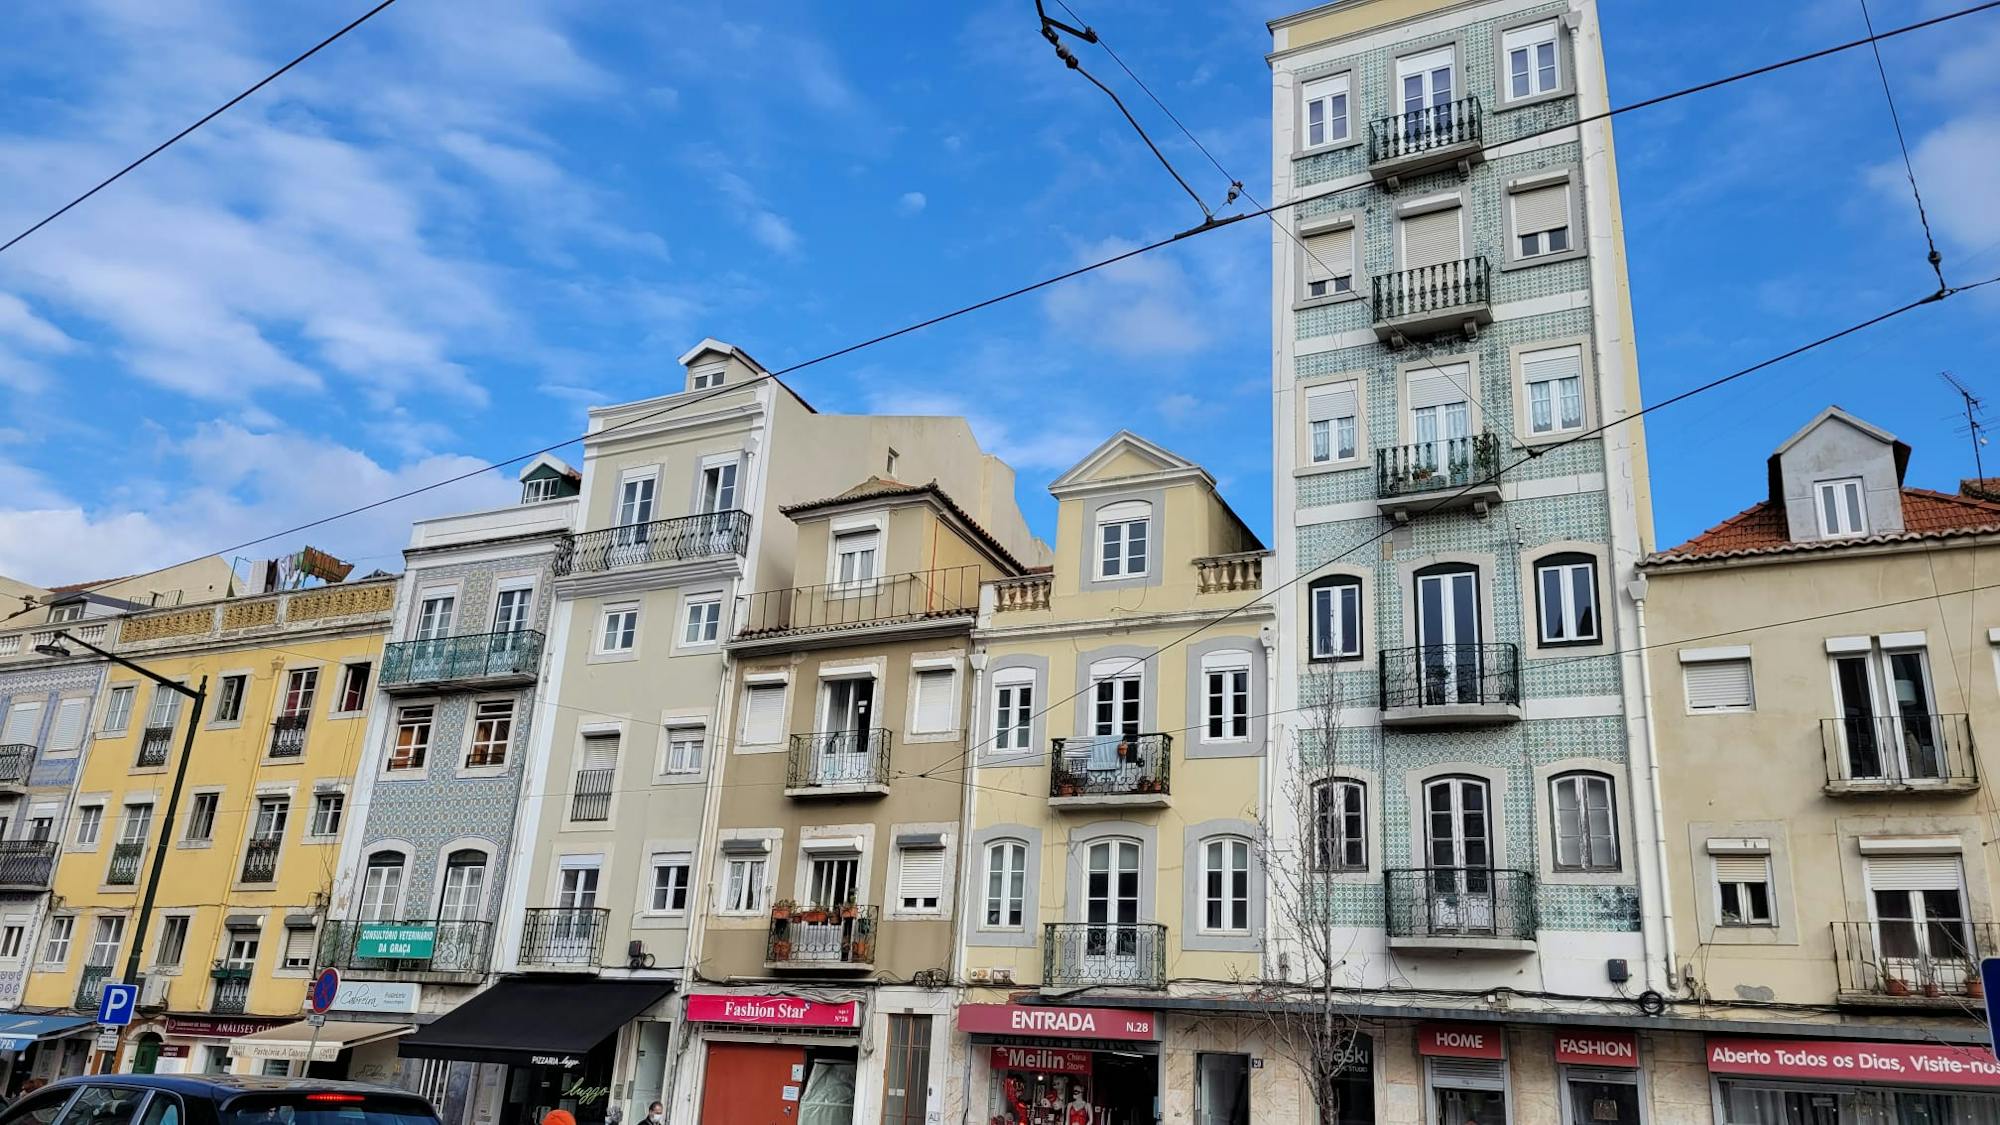 Wunderschöne Häuser, welche die Fliesenkunst Lissabons unterstreichen. 